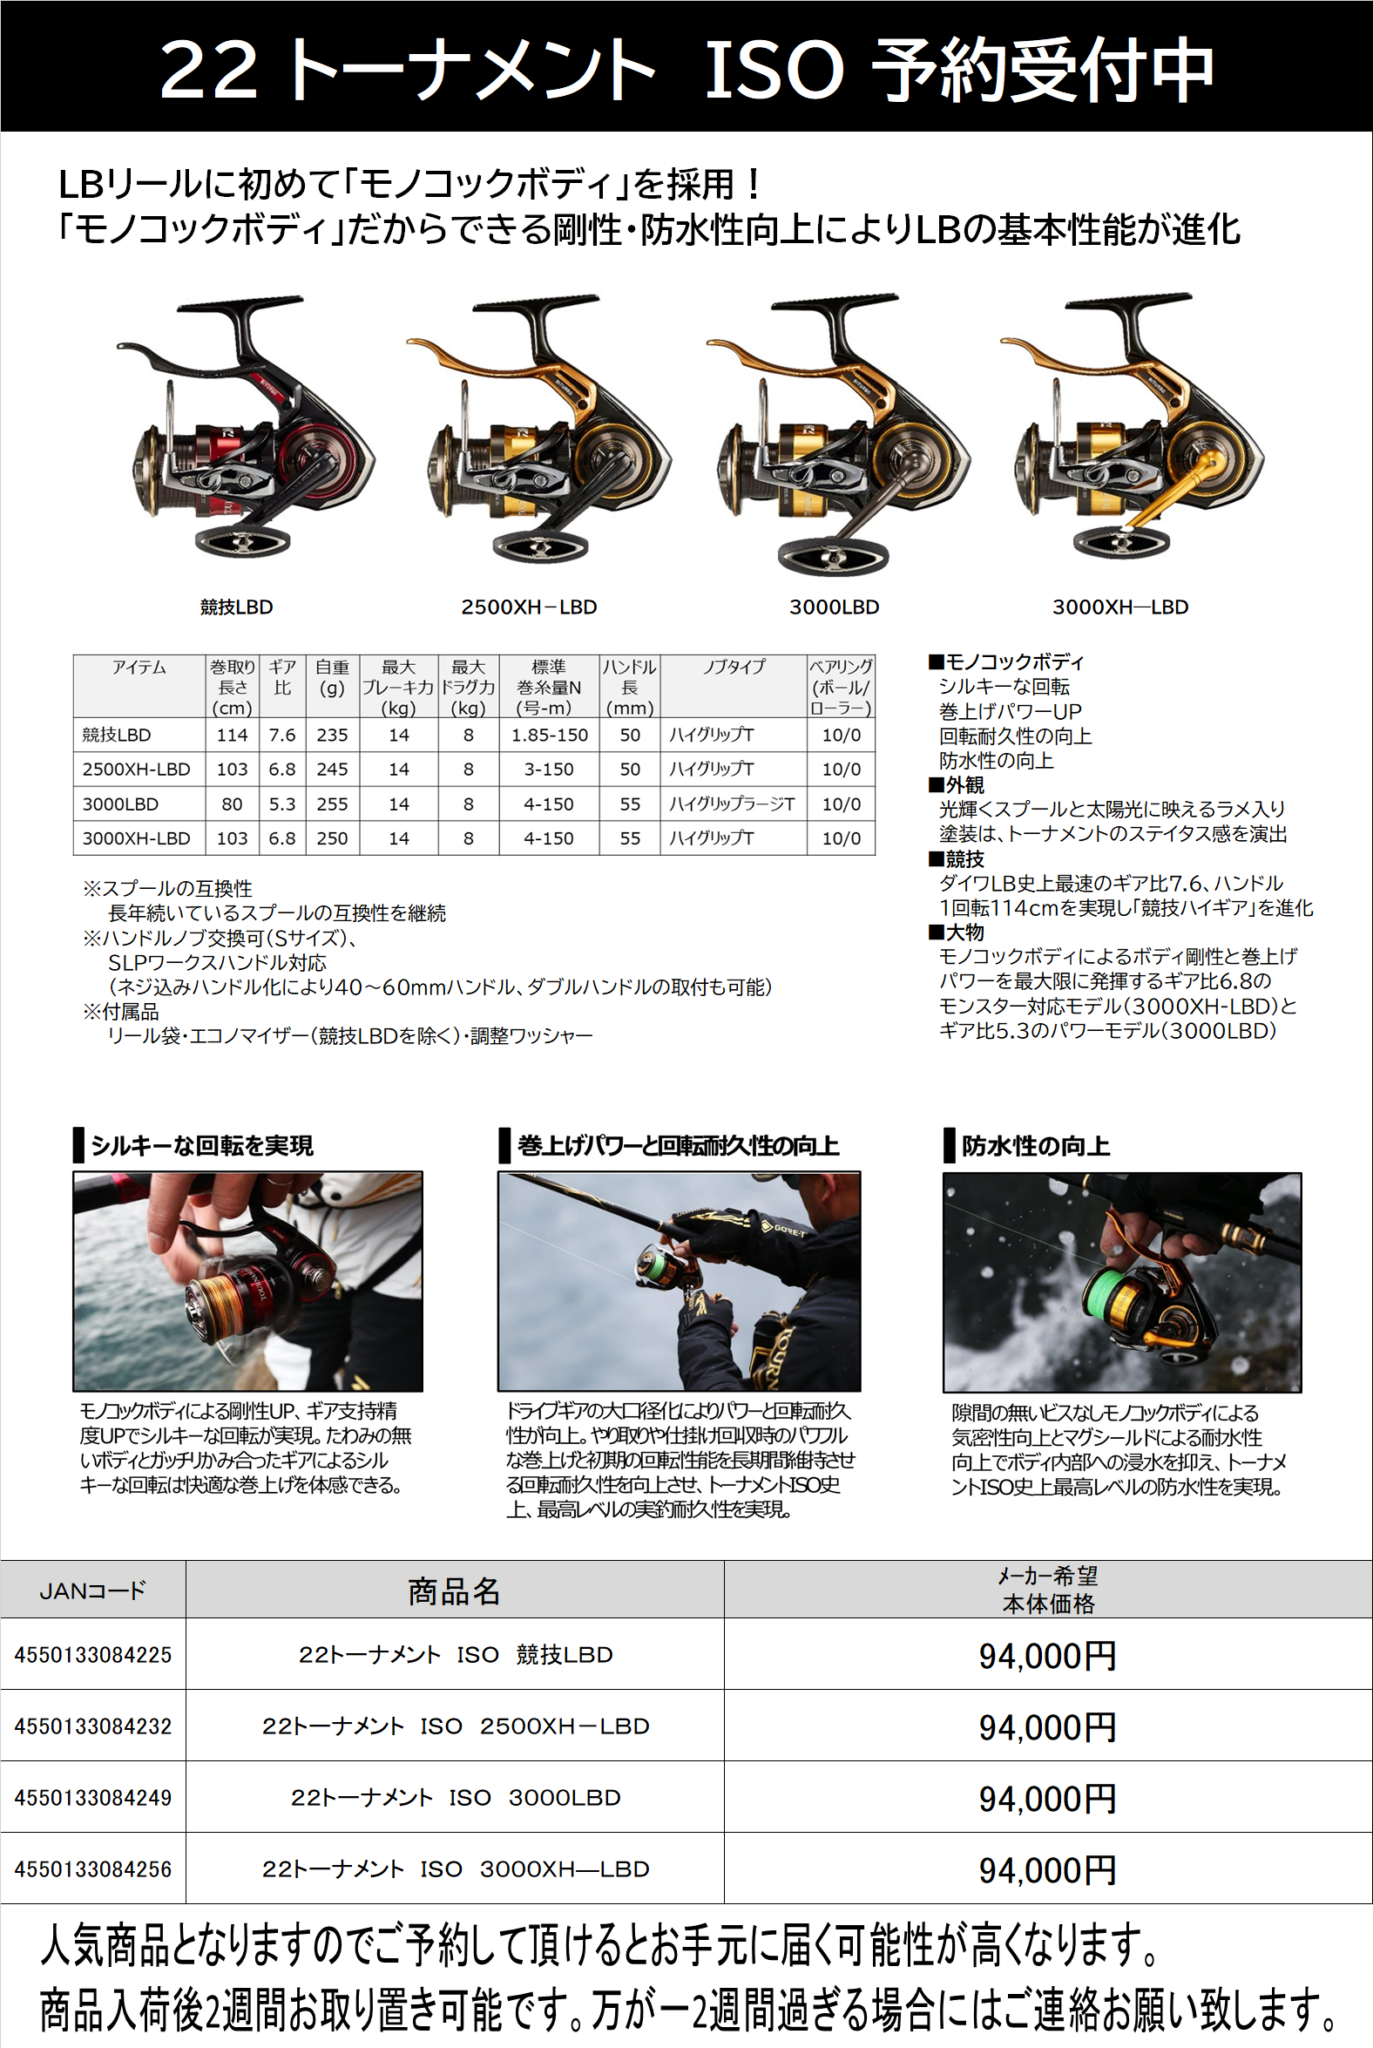 蔵 ダイワ DAIWA 磯LBリール 22トーナメント ISO 3000XH―LBD ブラック